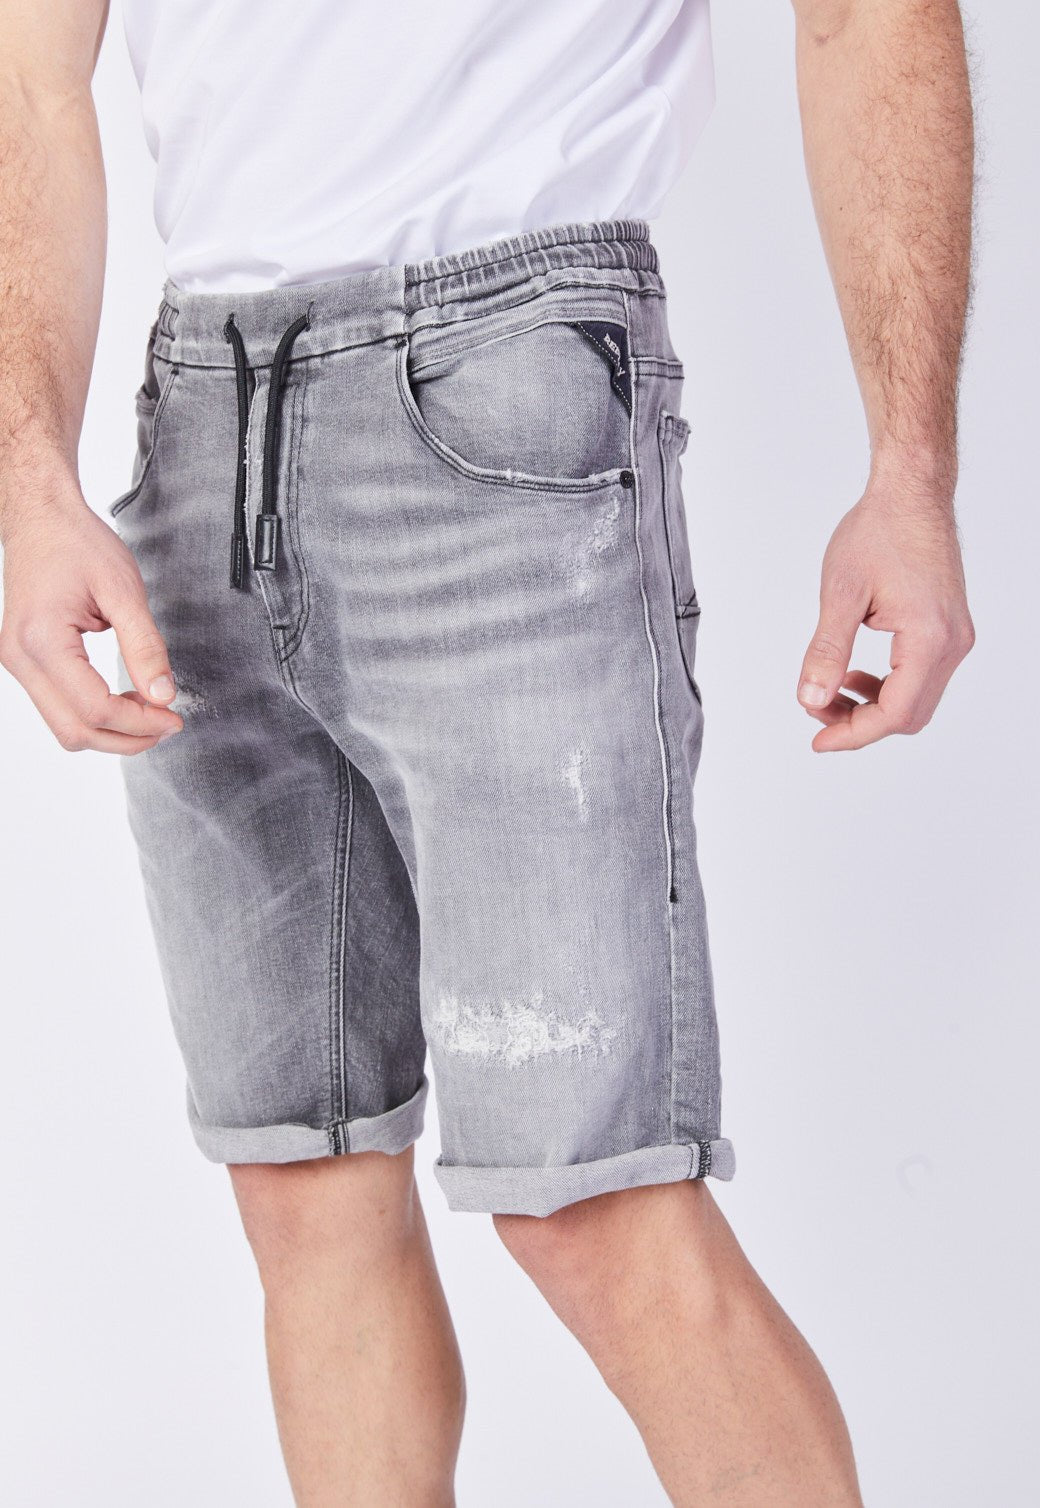 ג'ינס קצר עם קרעים גברים - Replay